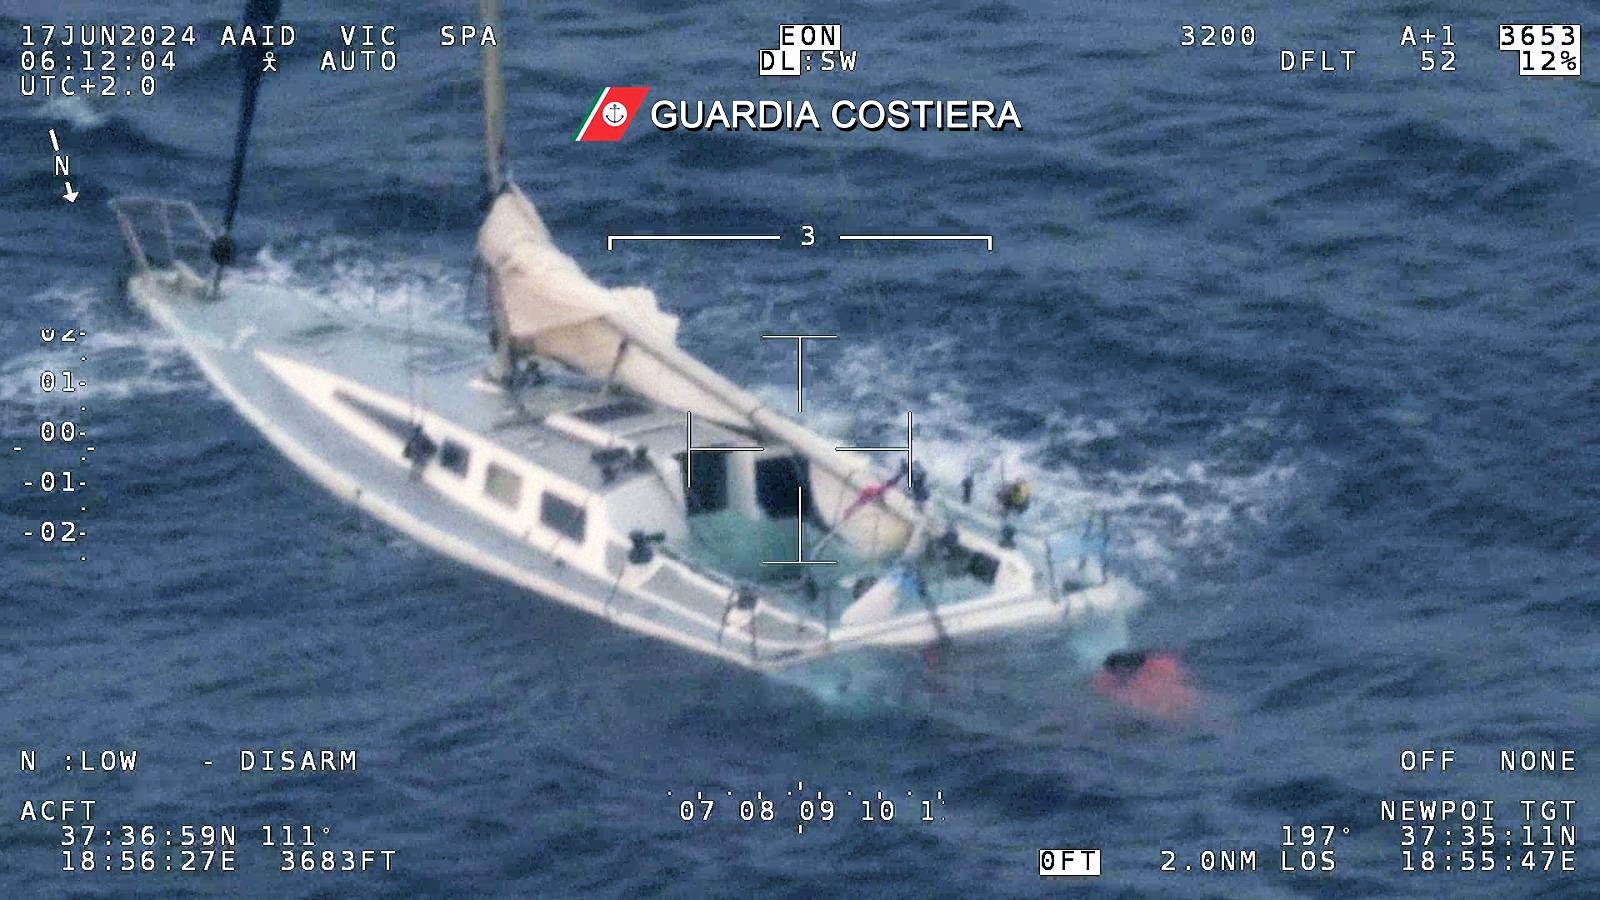 migranti_roccella_guardia costiera